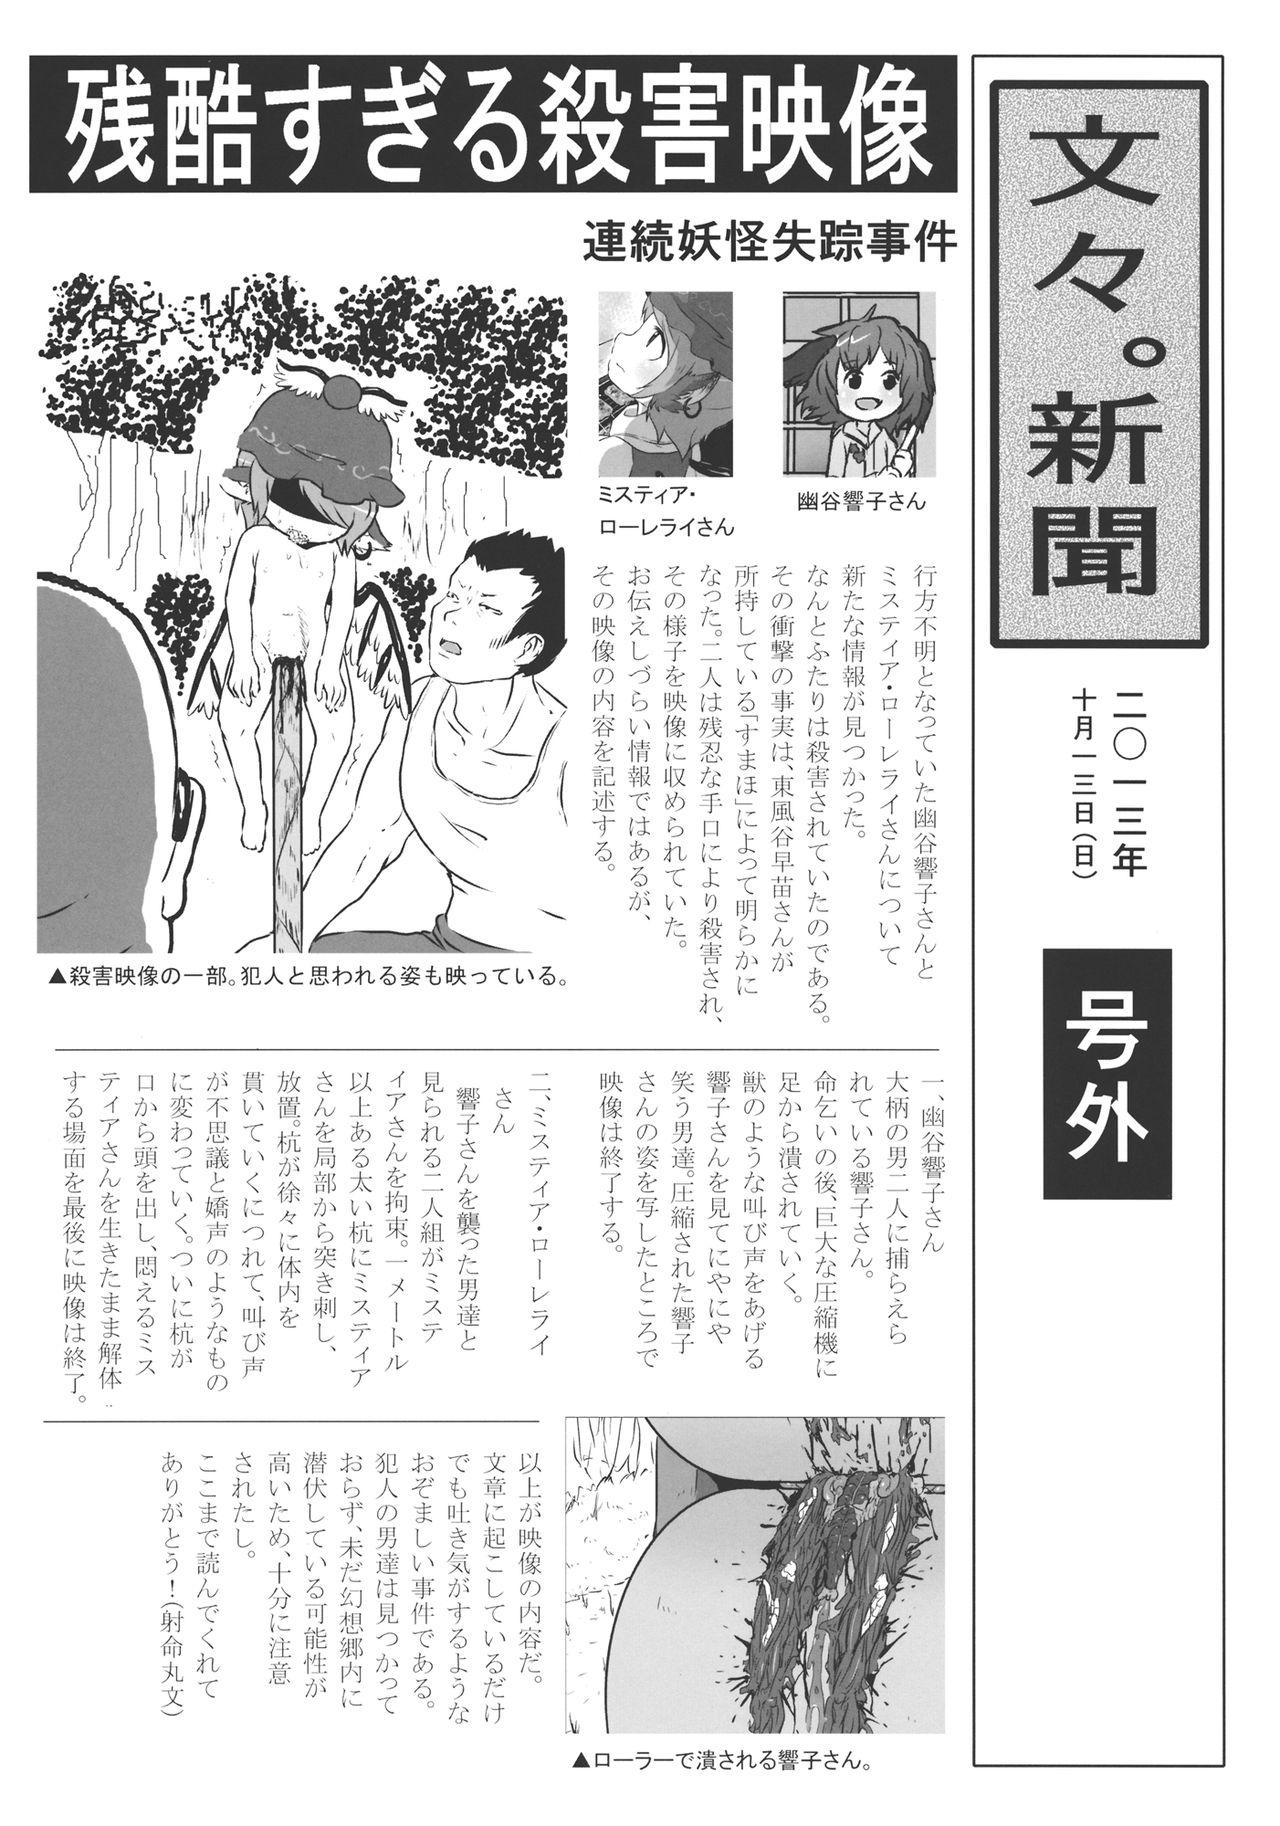 Kitchen (Kouroumu 9) [02 (Harasaki)] (Kojin Satsuei)(Touhou)(Kouroumu 9)[02] Touhou snuff vol.3 Kawashiro Nitori (Mushuusei) (Loli-kei Youjo no Kirei na Hadaka wo Suki Houdai shichai mashita!).avi (Touhou Project) [布洛基个人汉化] - Touhou project Peruana - Page 4